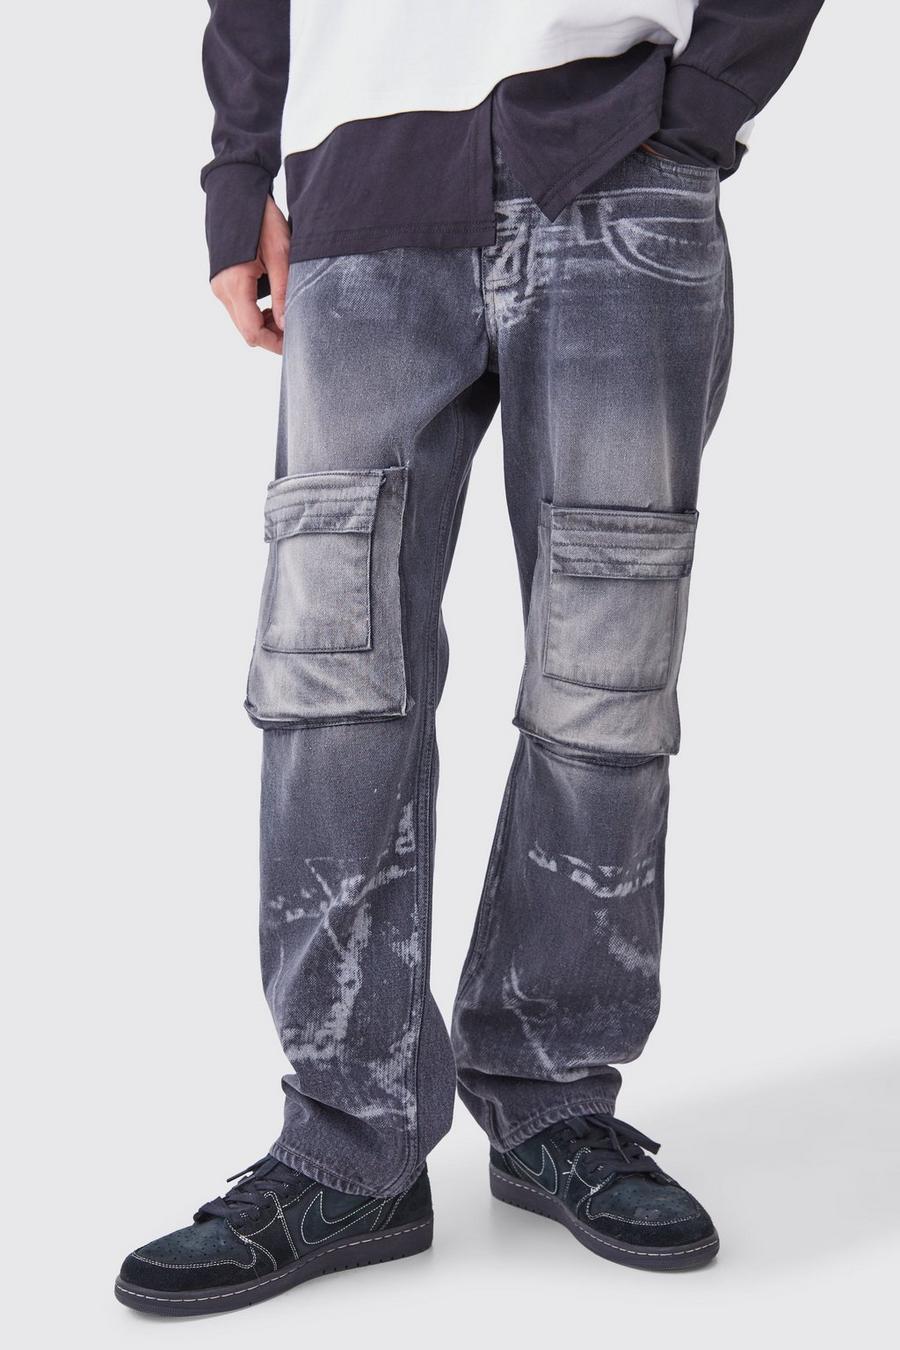 Lockere Jeans mit X-Ray Print und Acid-Waschung, Washed black